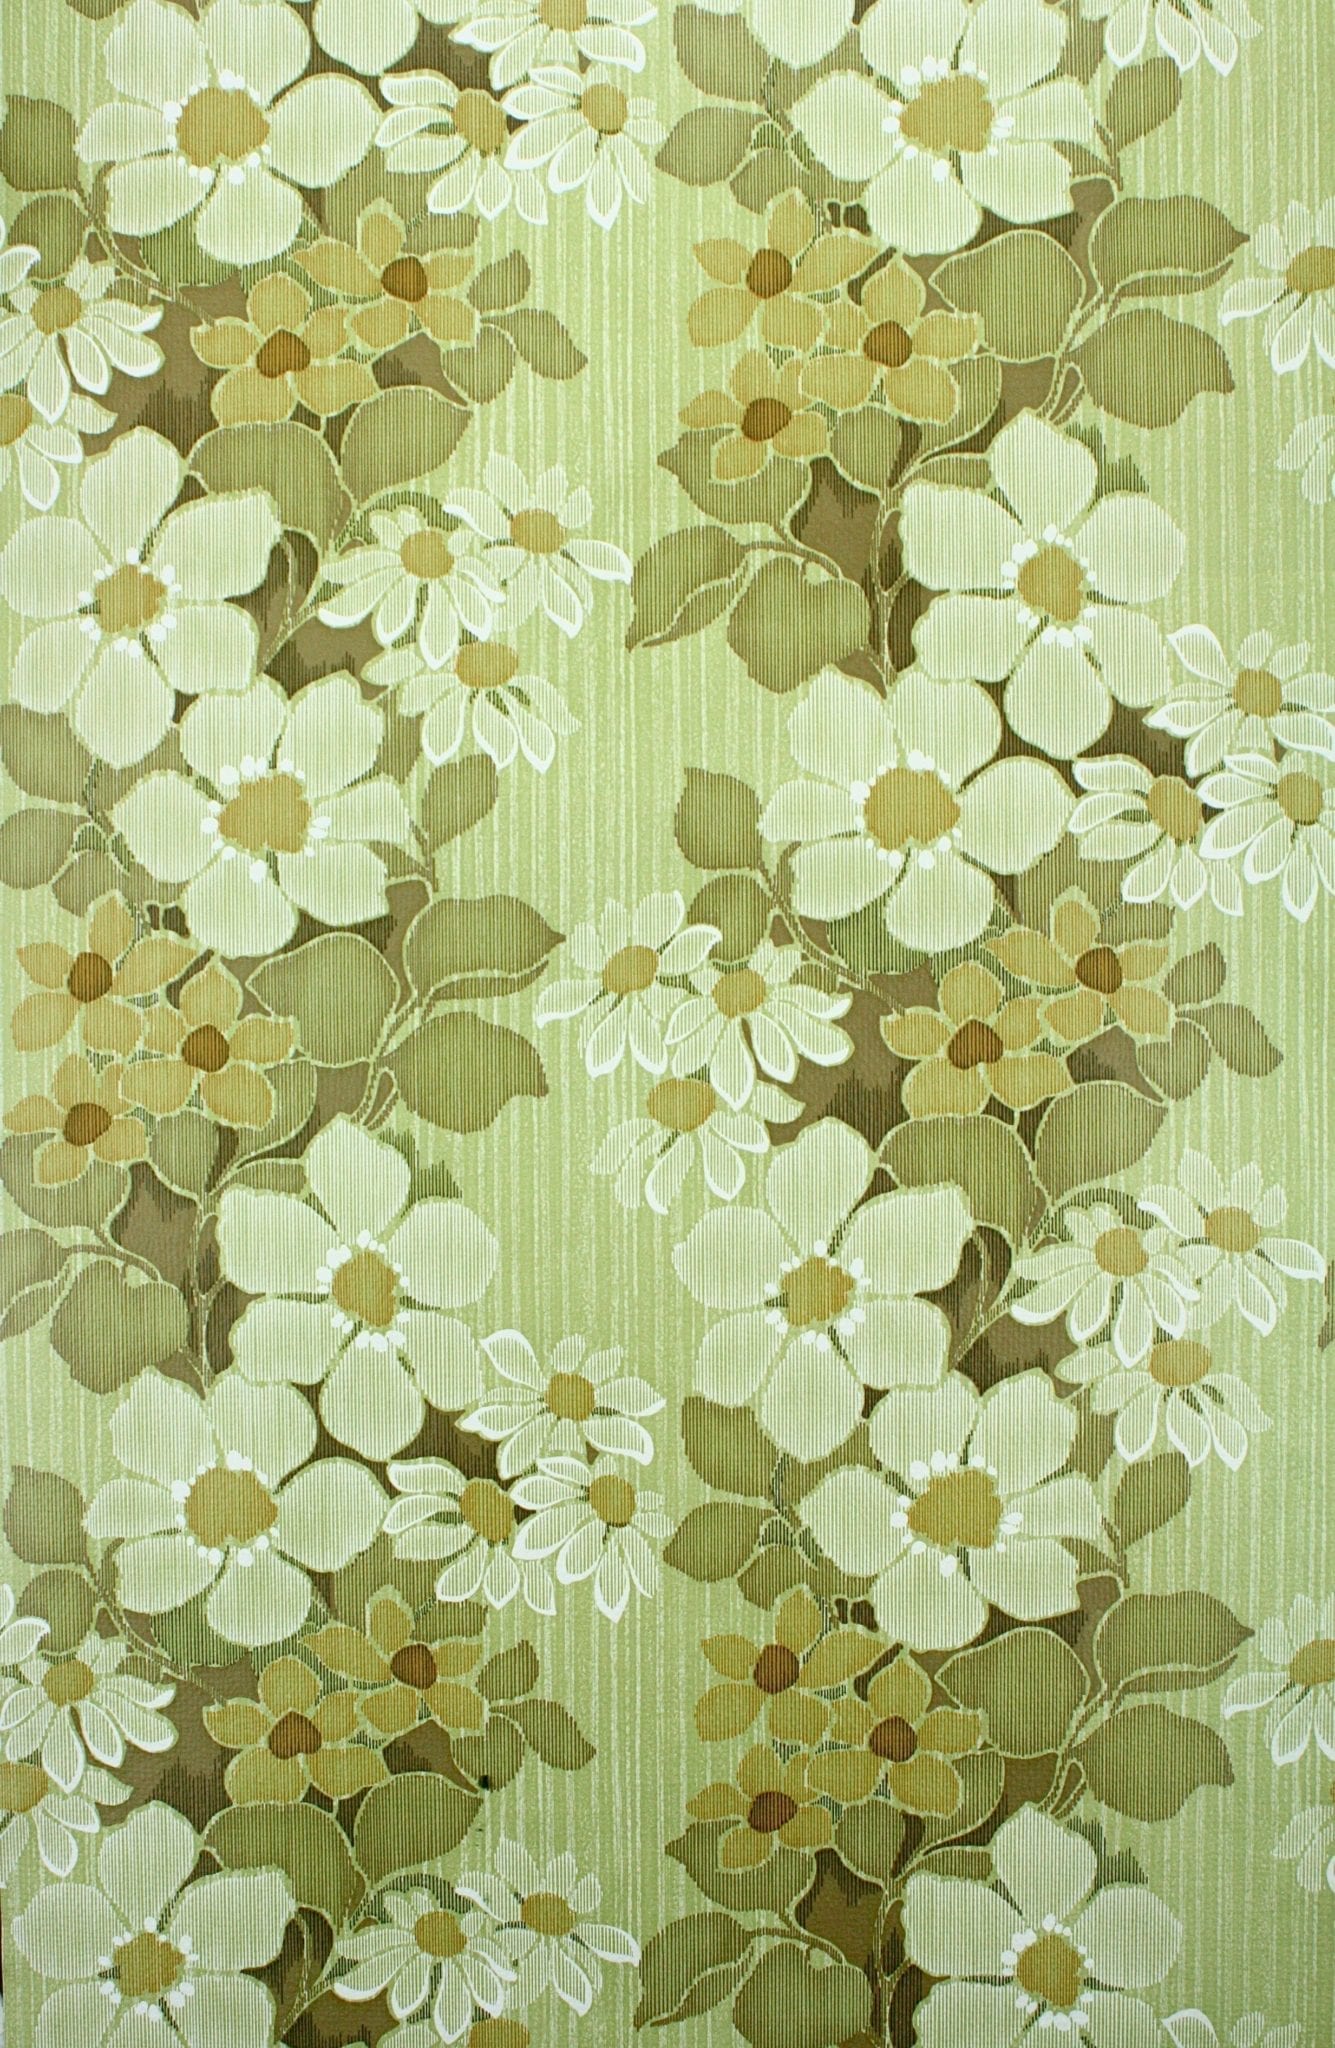 Vintage Retro Floral Wallpaper - Vintage Green Floral , HD Wallpaper & Backgrounds